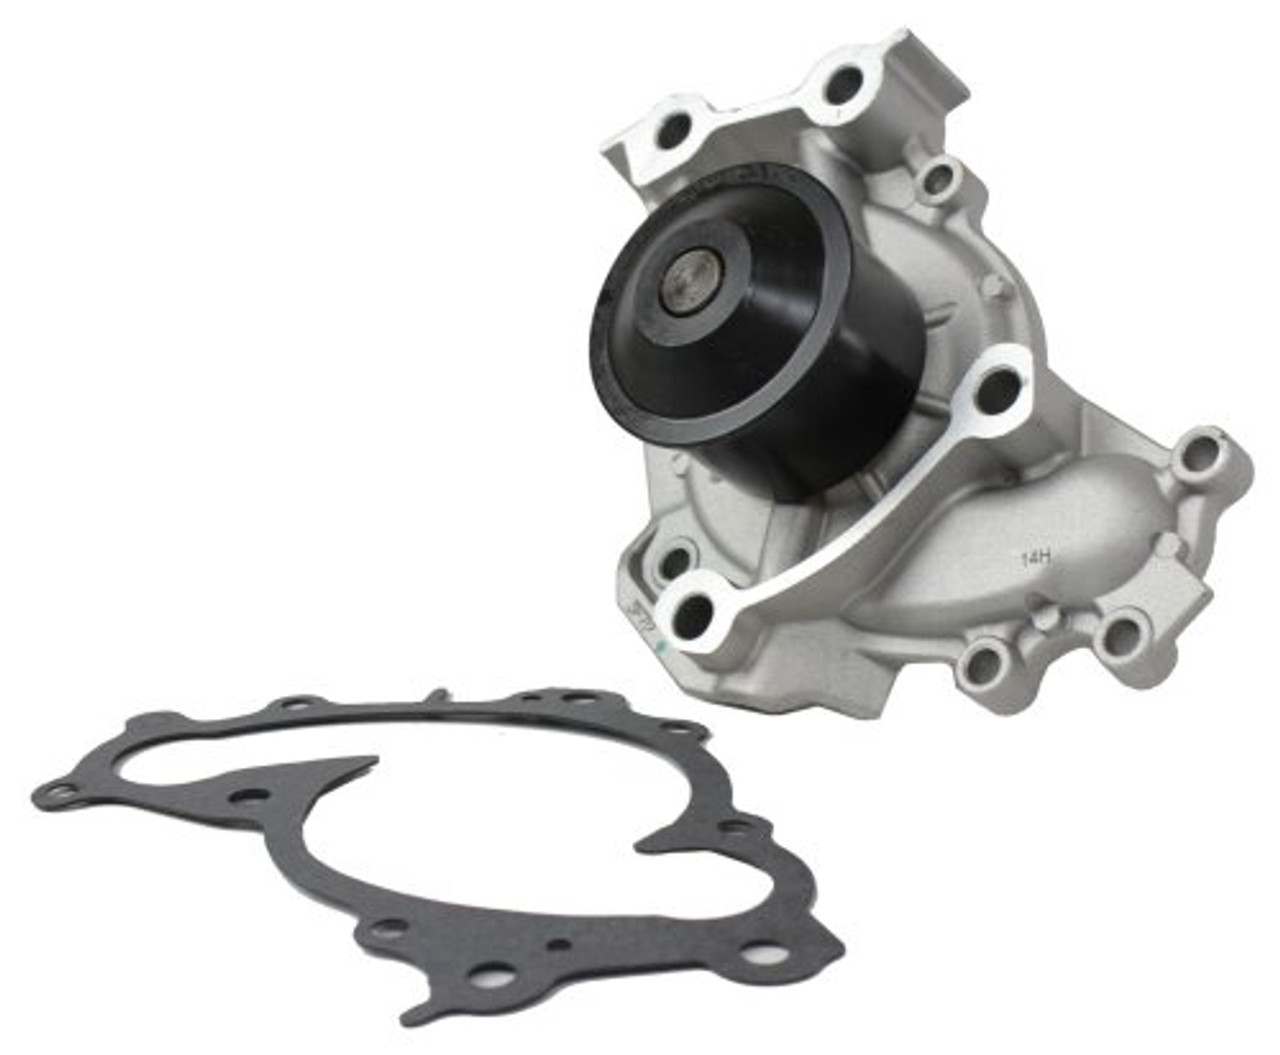 Water Pump - 2000 Lexus RX300 3.0L Engine Parts # WP960ZE15